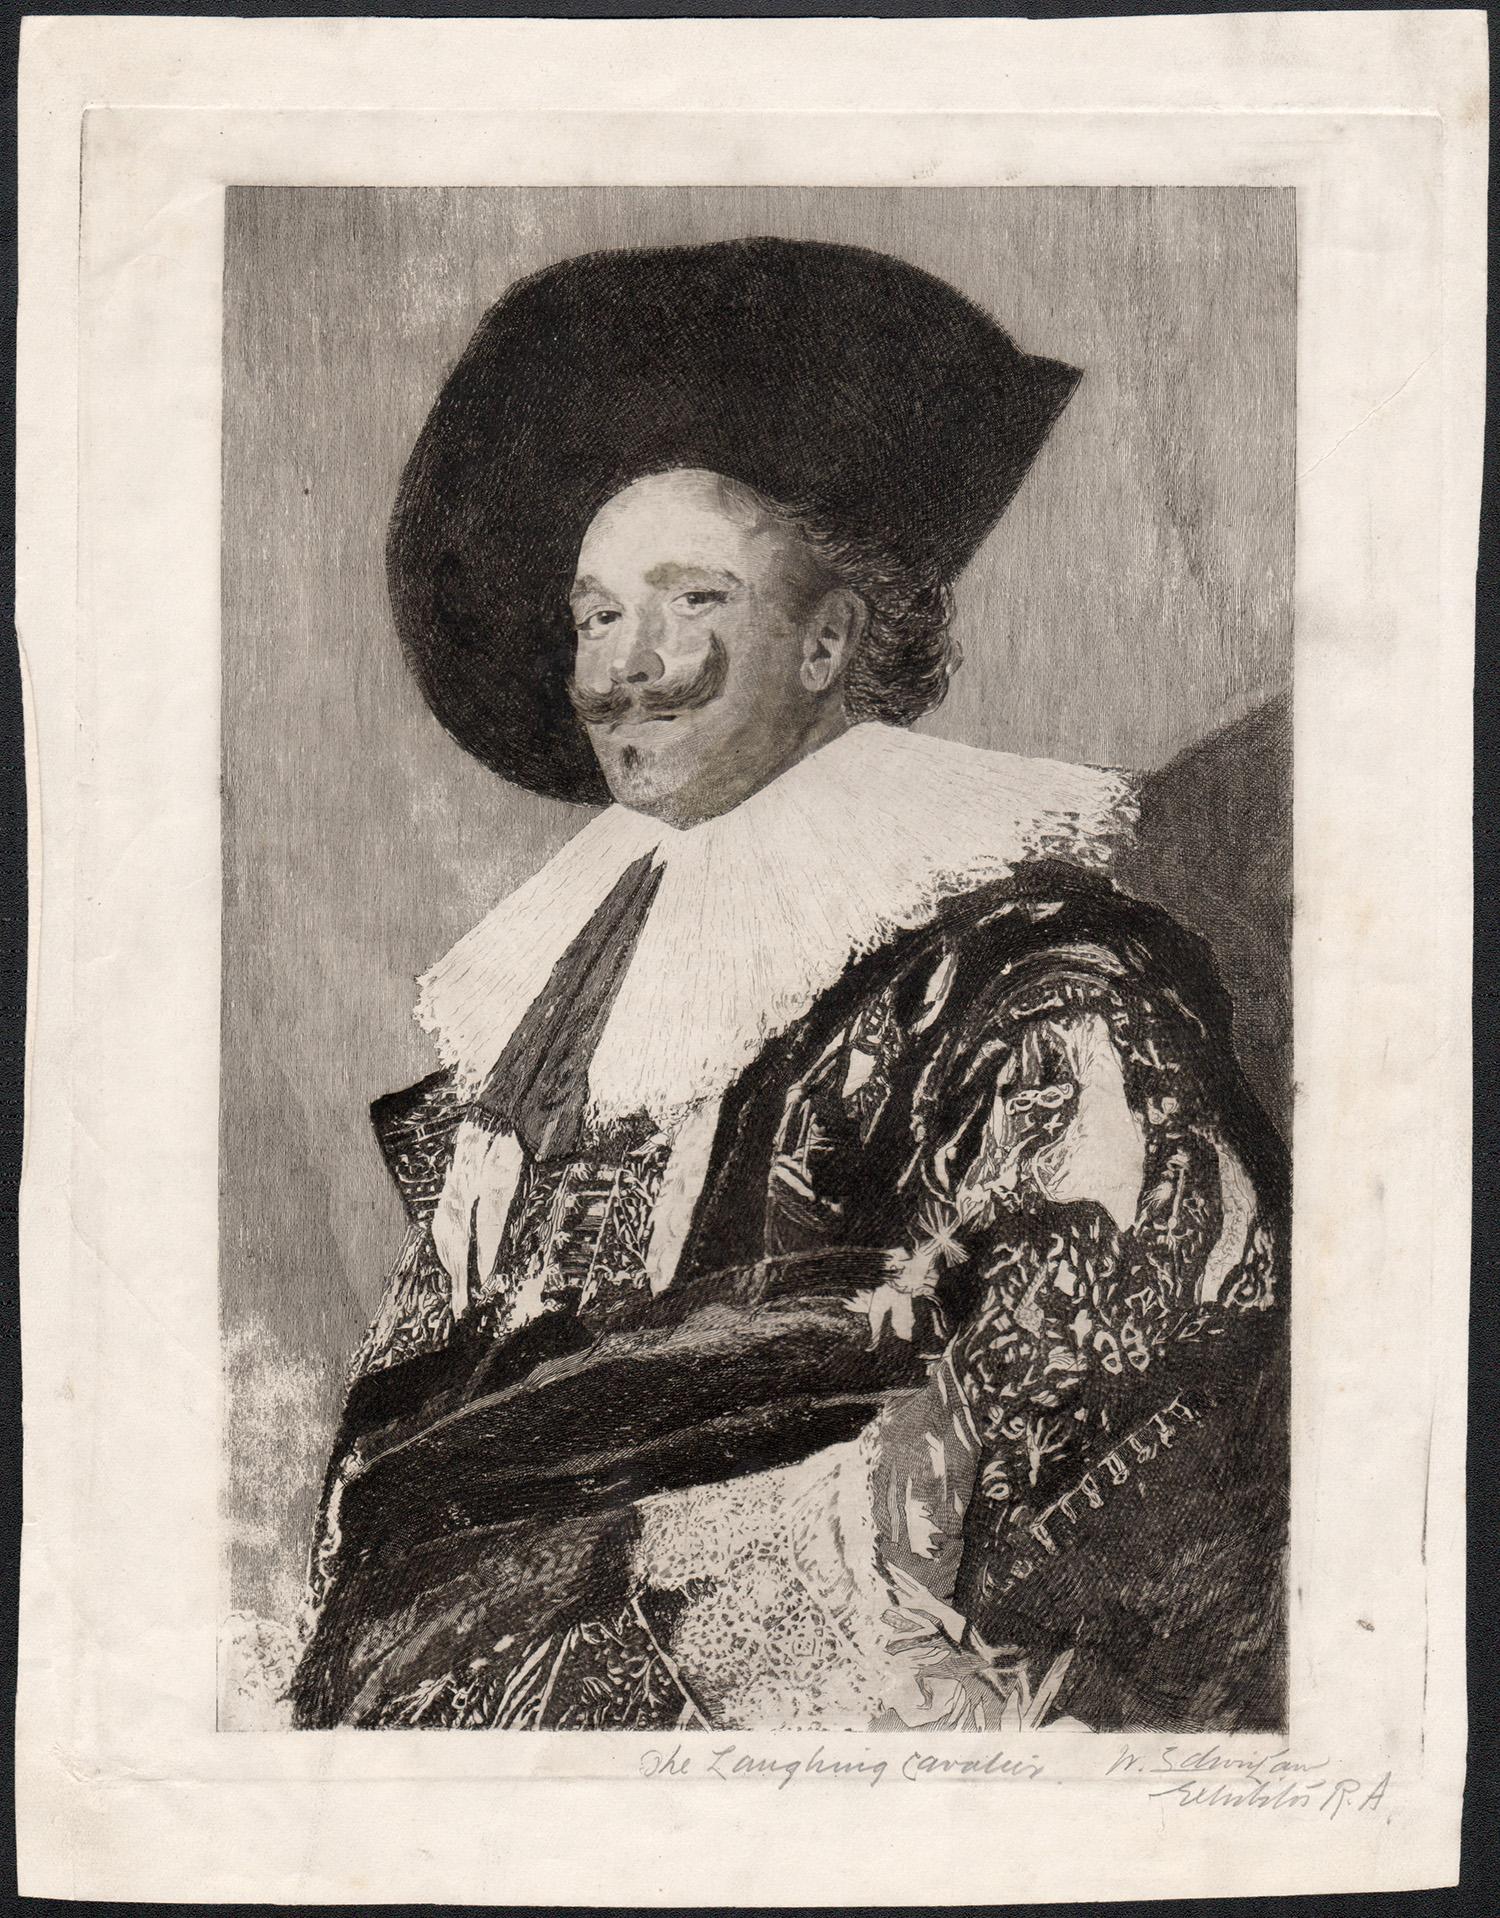 The Laughing Cavalier, Radierung von W Edwin Law nach Frans Hals, um 1925 – Print von W Edwin Law after Frans Hals